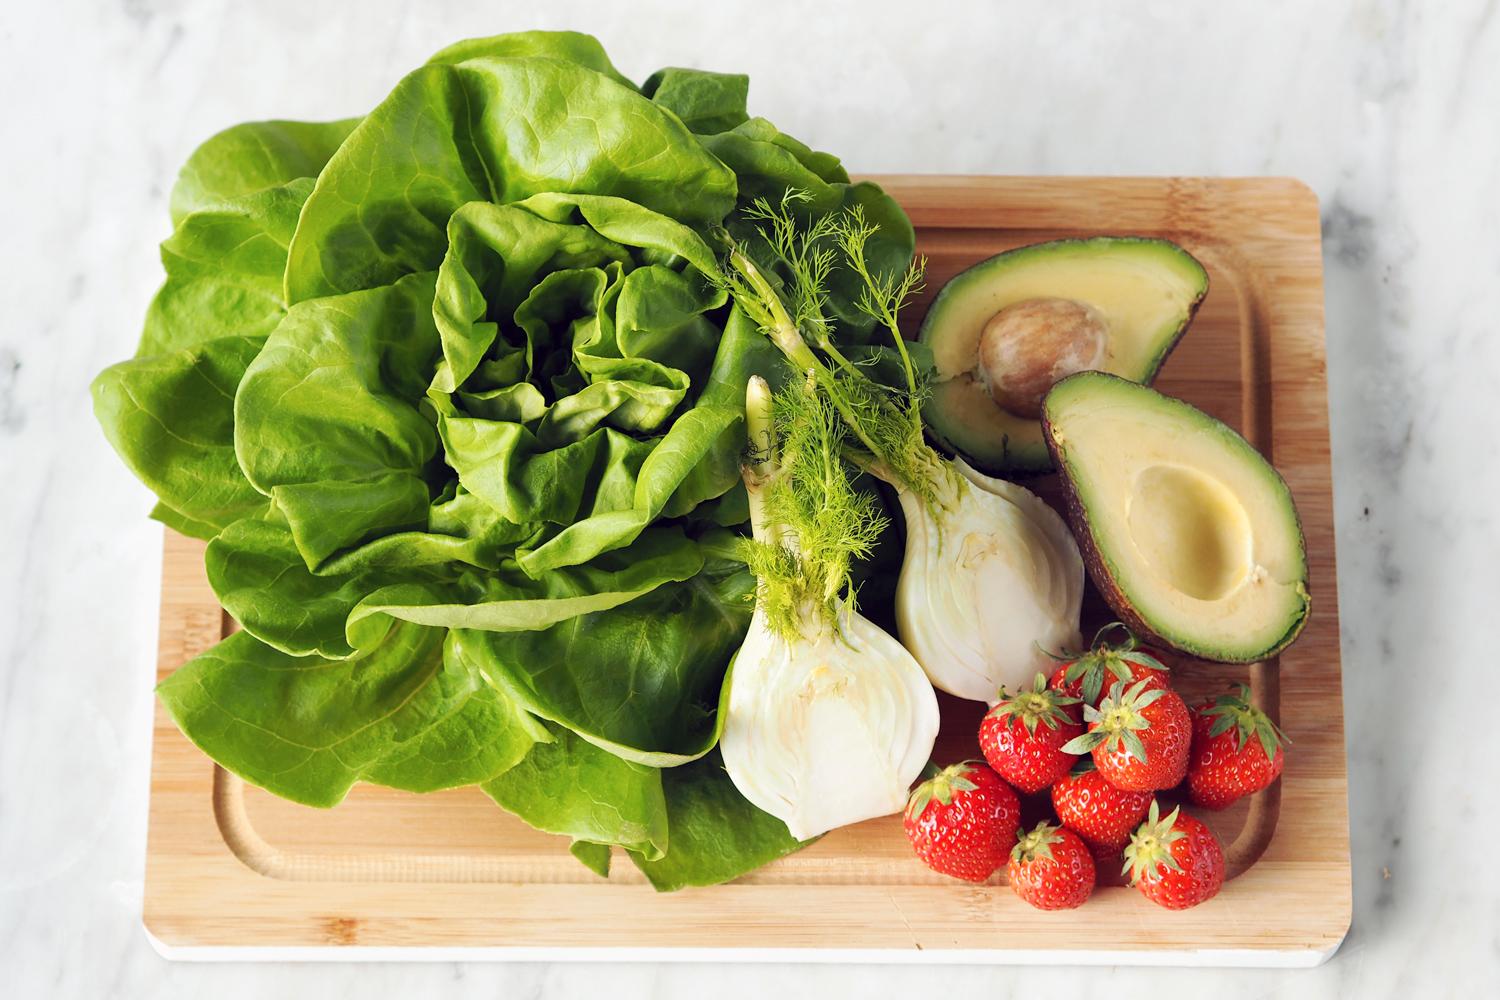 Riv salatbadene i store biter. Skyll godt og tørk i en salatslynge eller et rent kjøkkenhåndkle.